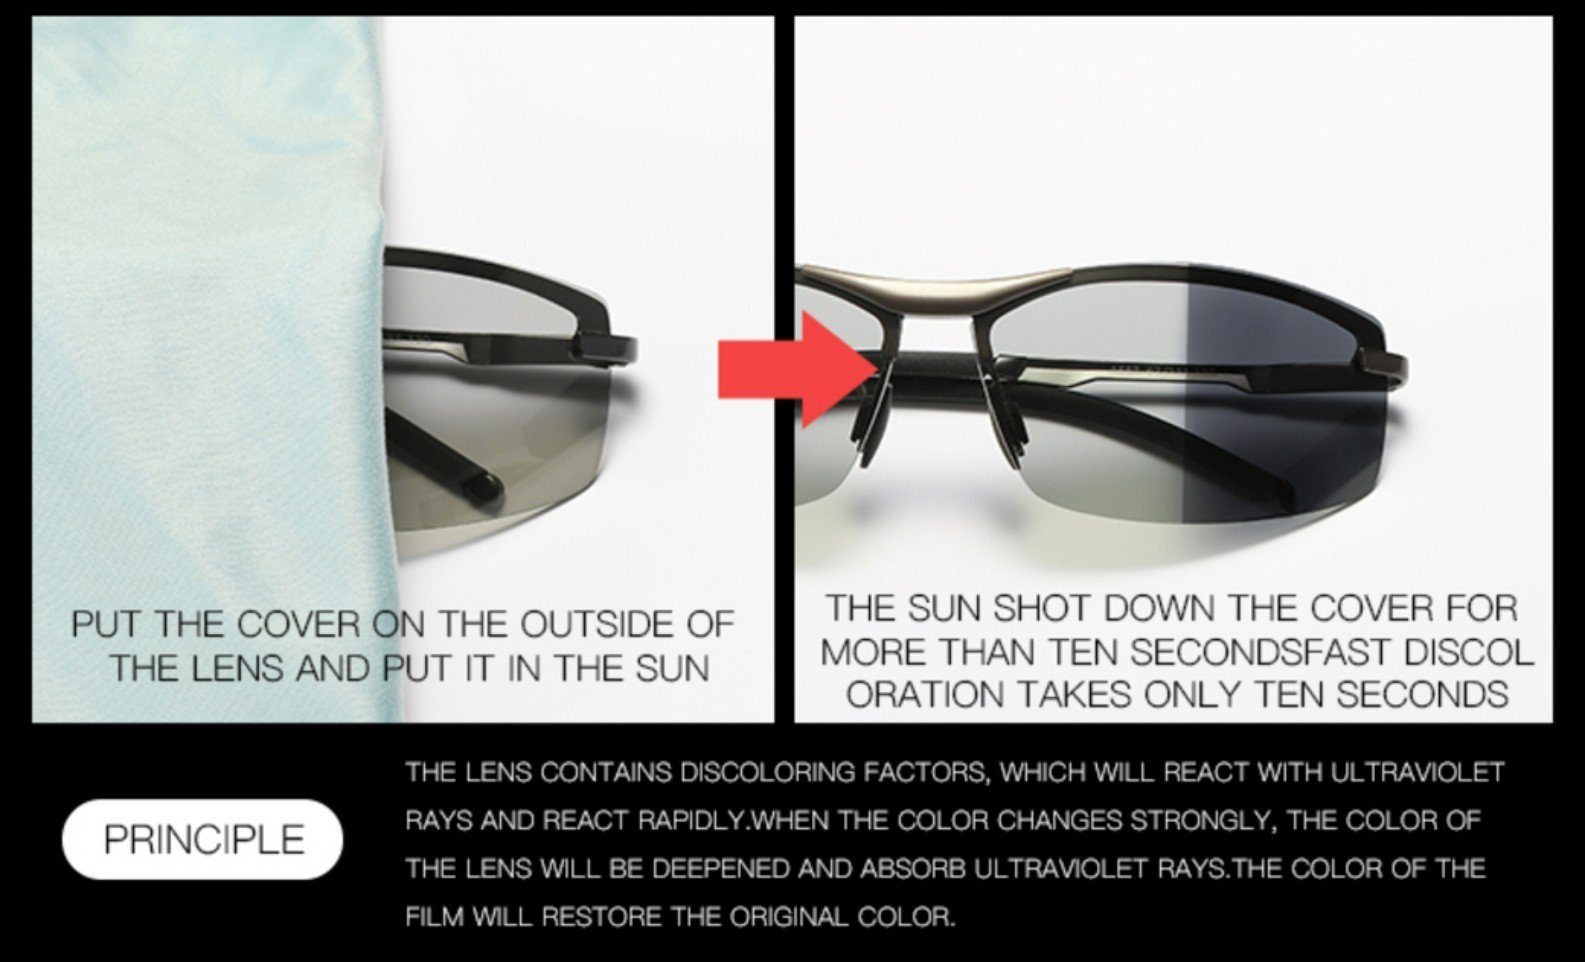 PACIEA Sonnenbrille Sonnenbrille Sportbrille polarisiert UV400 100% Leicht Schutz Herren silbergelb